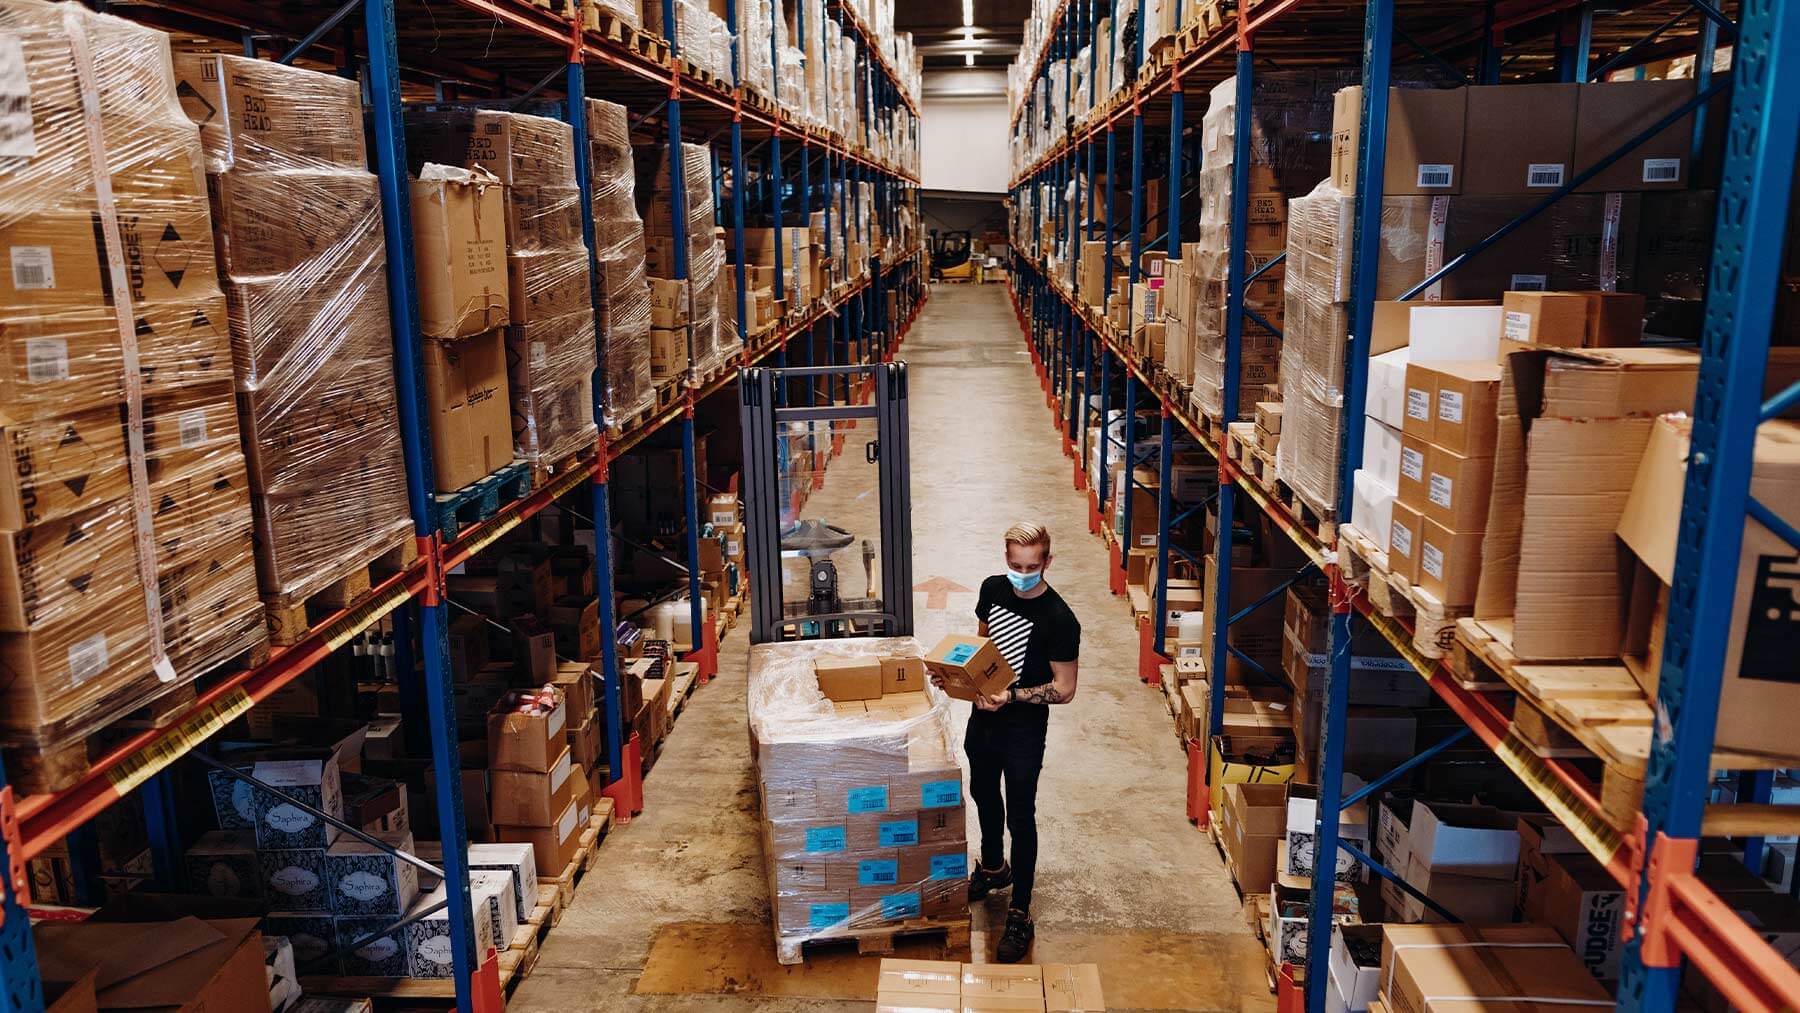 En ung kille med munskydd arbetar ensam i en stor lagerlokal.